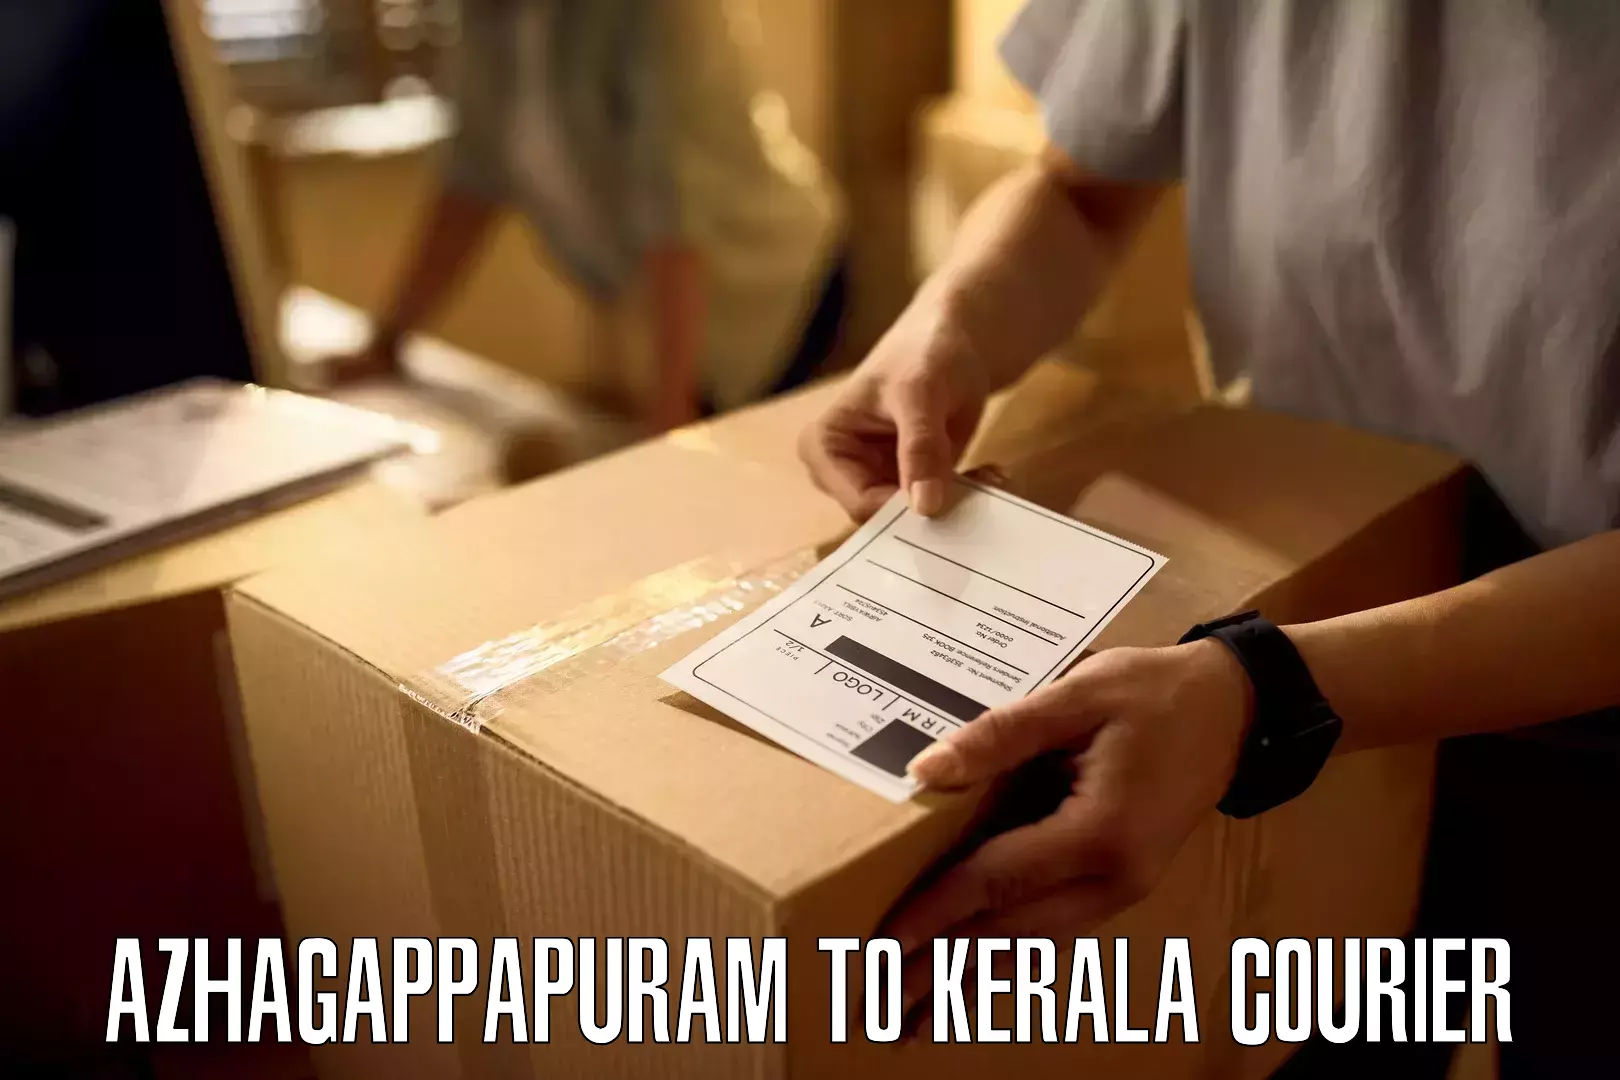 Versatile courier offerings Azhagappapuram to Kakkur